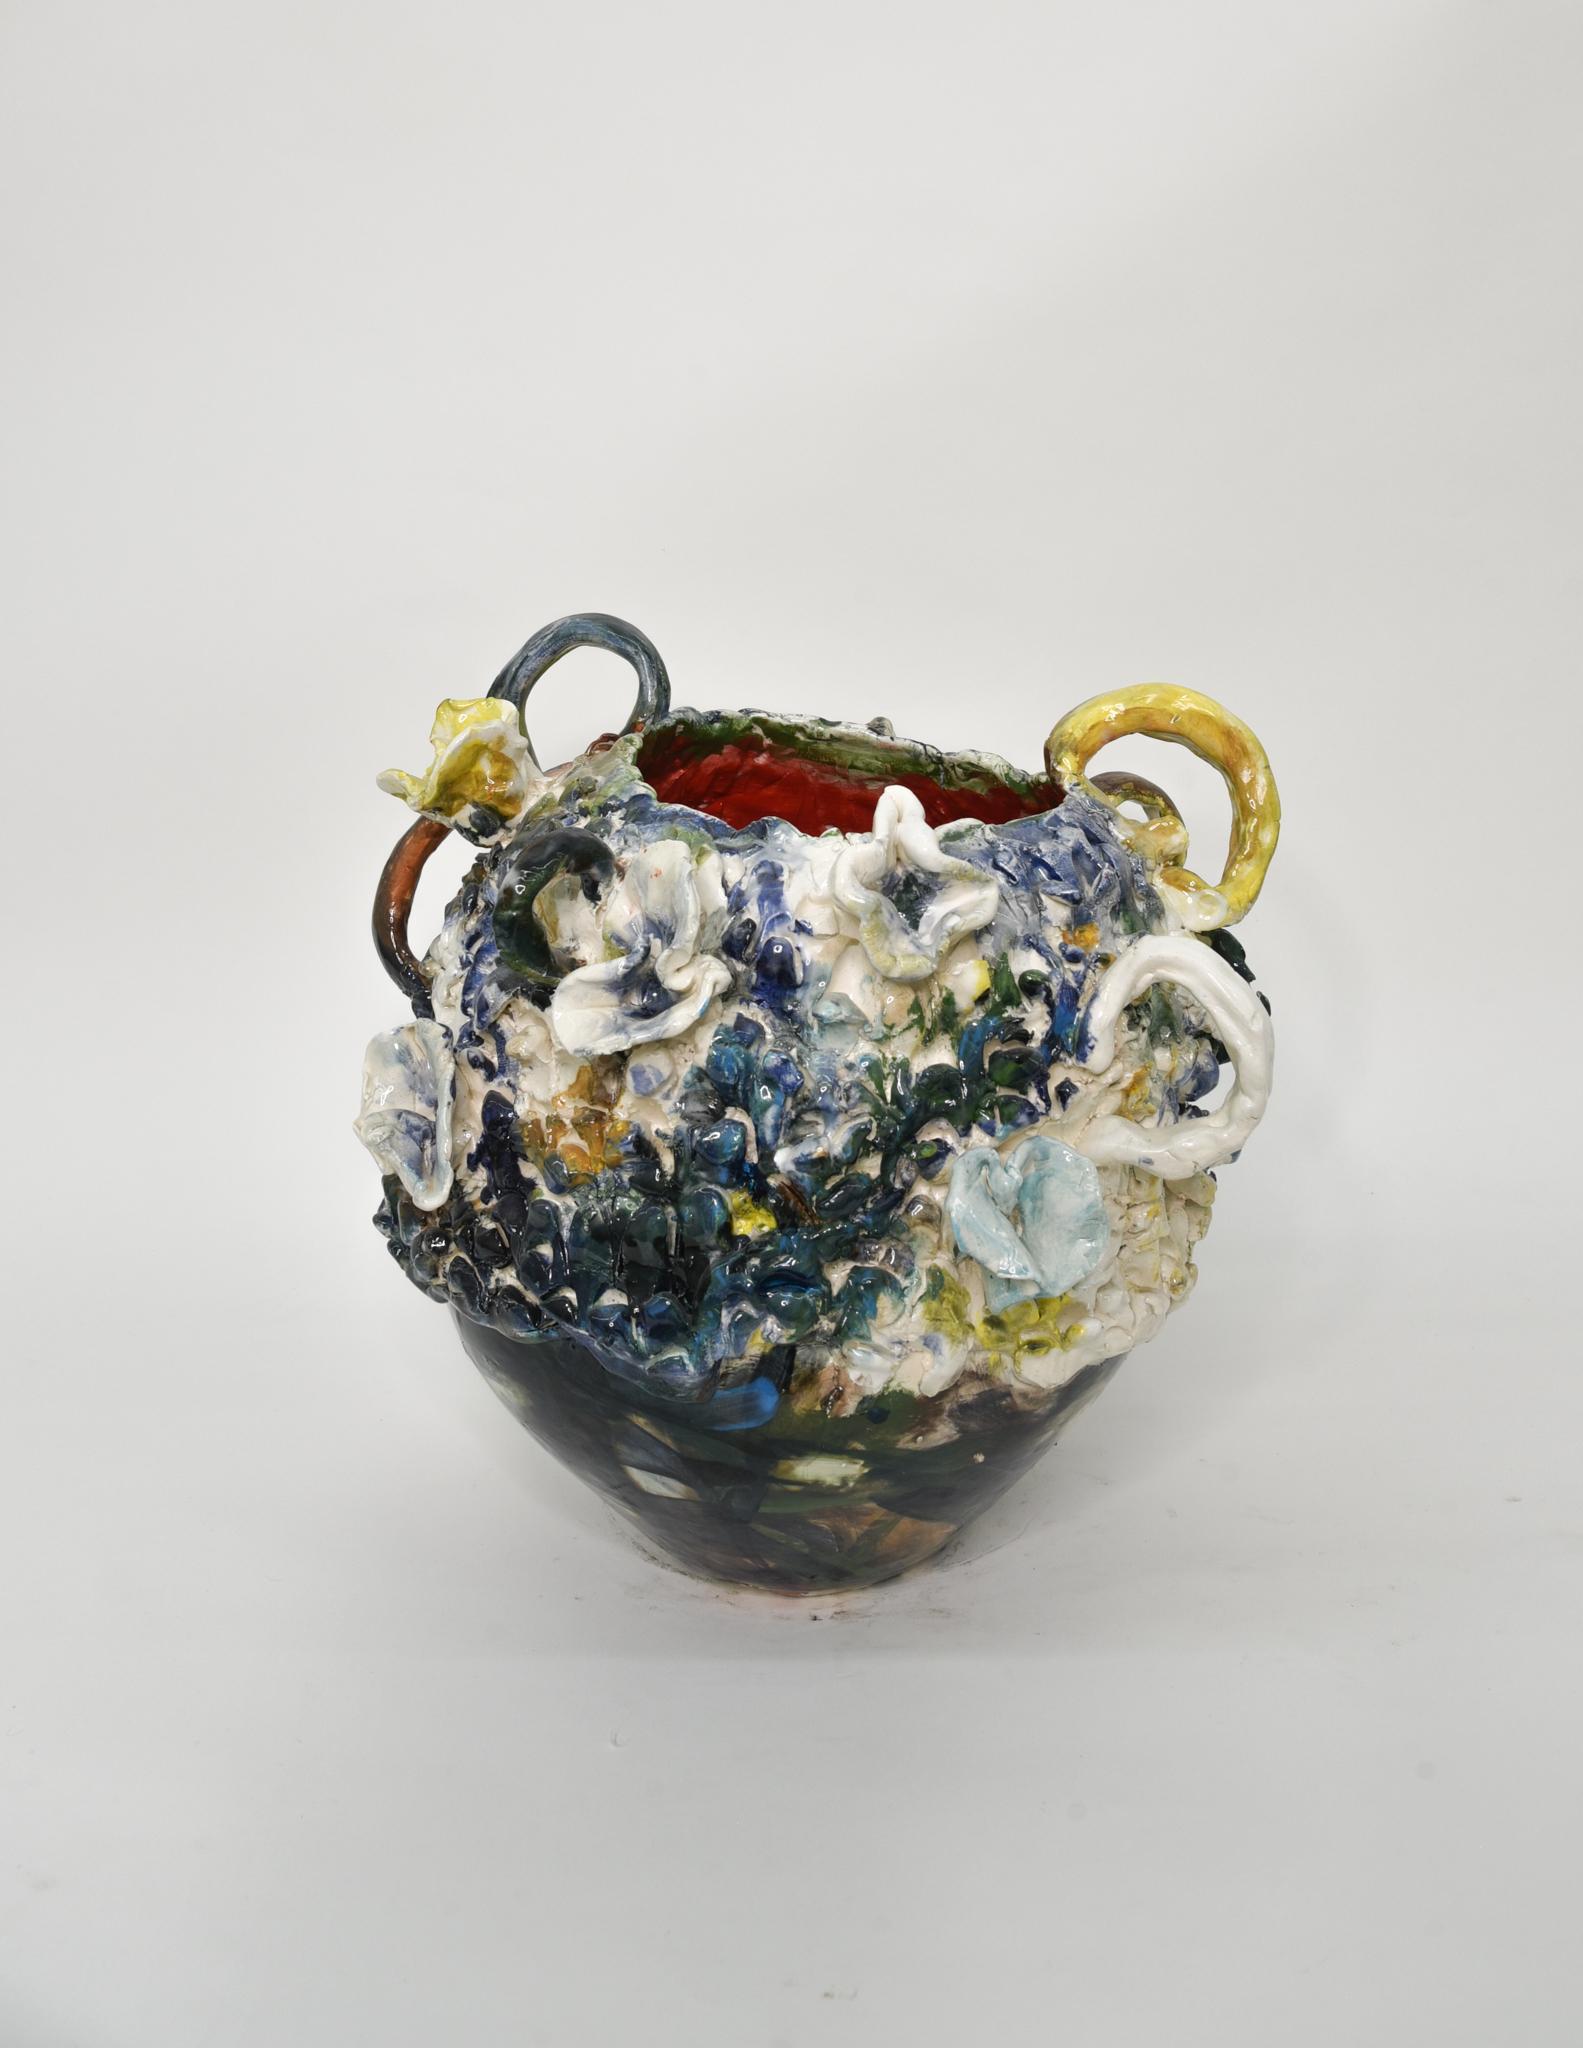 Blau und gelb. Abstrakte glasierte Keramikglasur-Gefäßskulptur